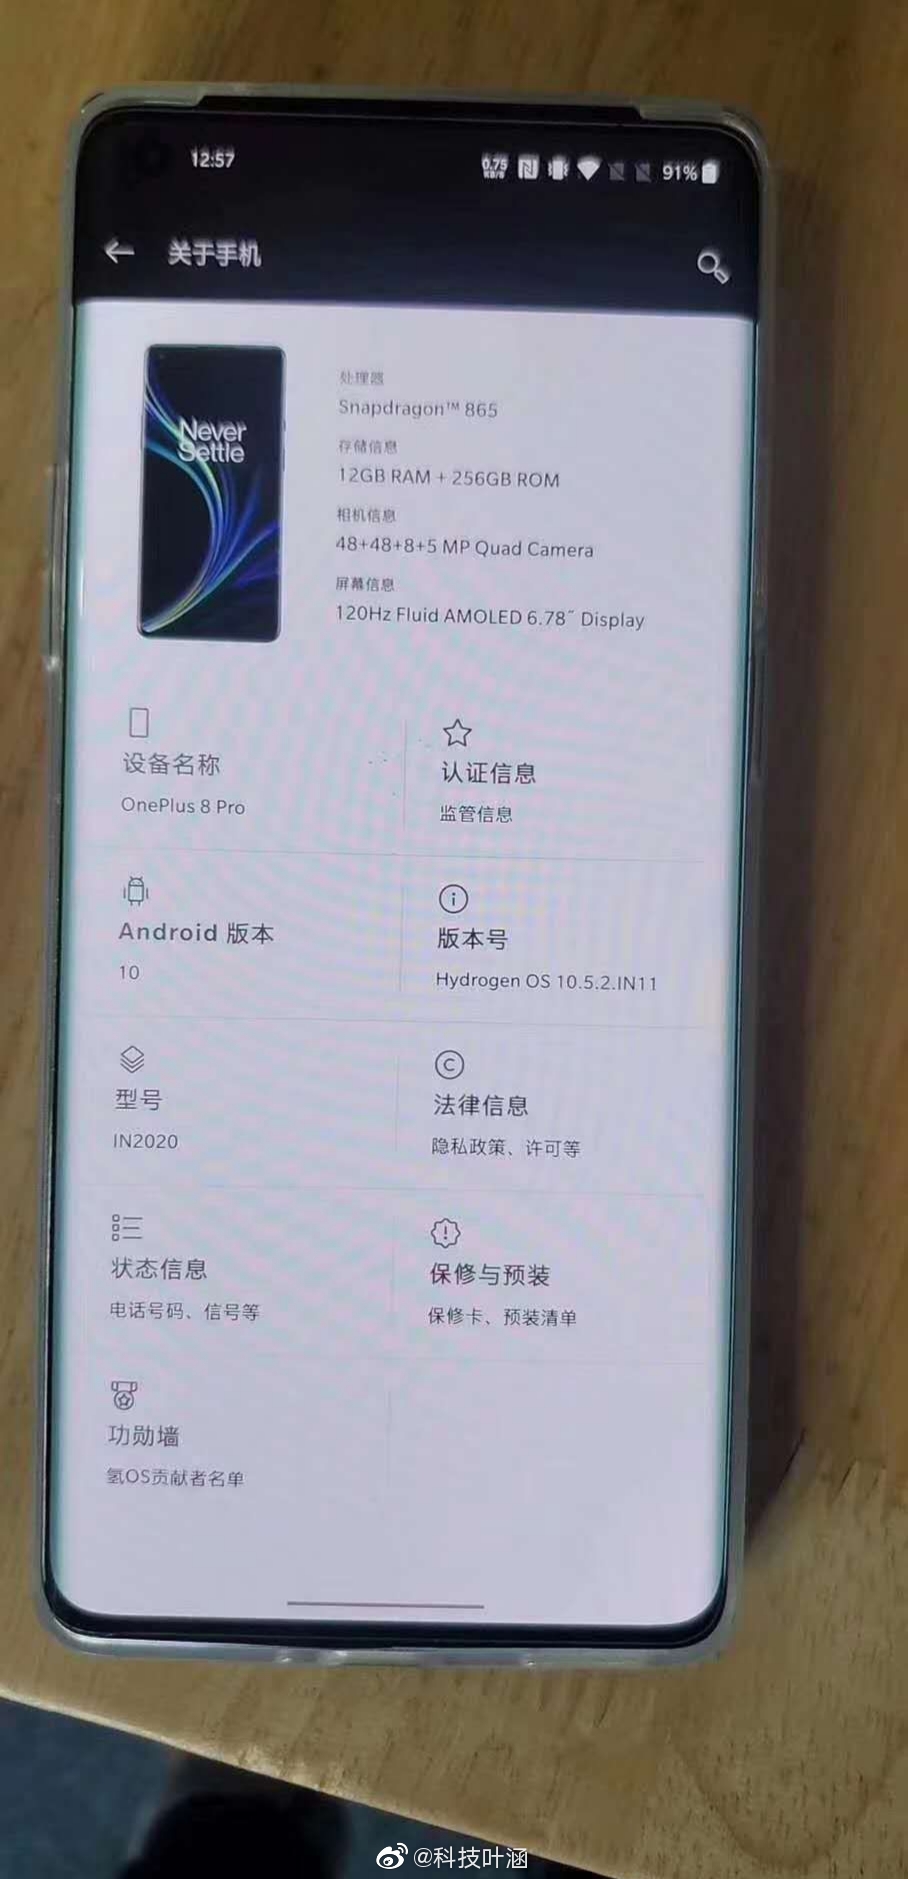 OnePlus 8 Pro Live Image Leak Specs